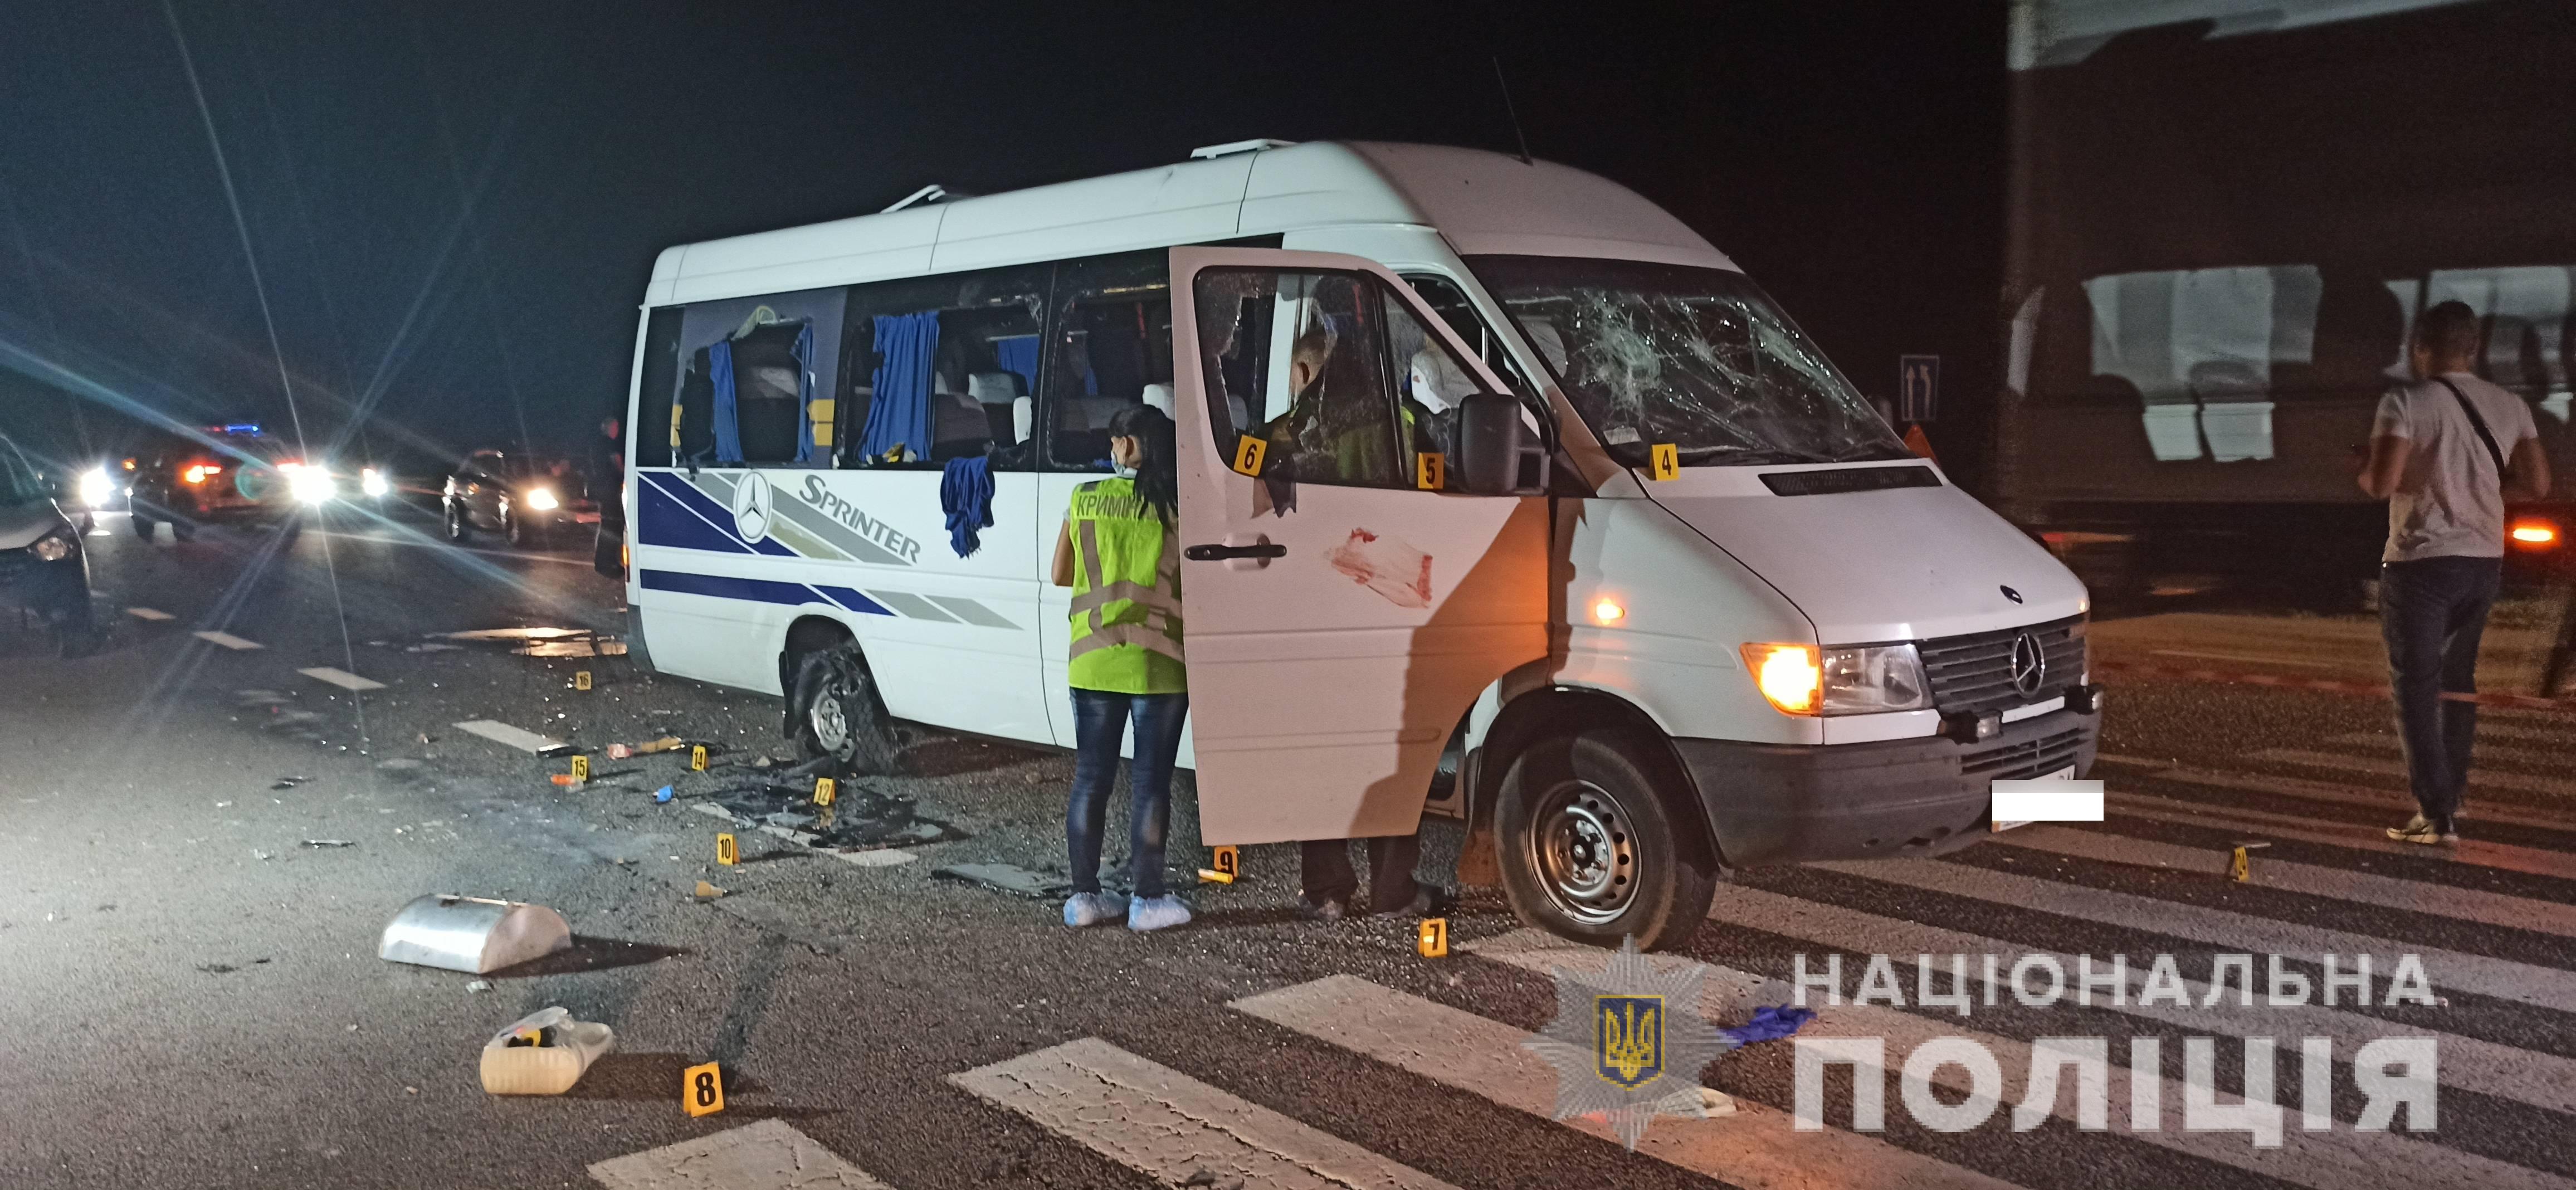 Підозрювані у нападі зі стріляниною на автобус ОПЗЖ під Люботином залишаться під вартою — суд